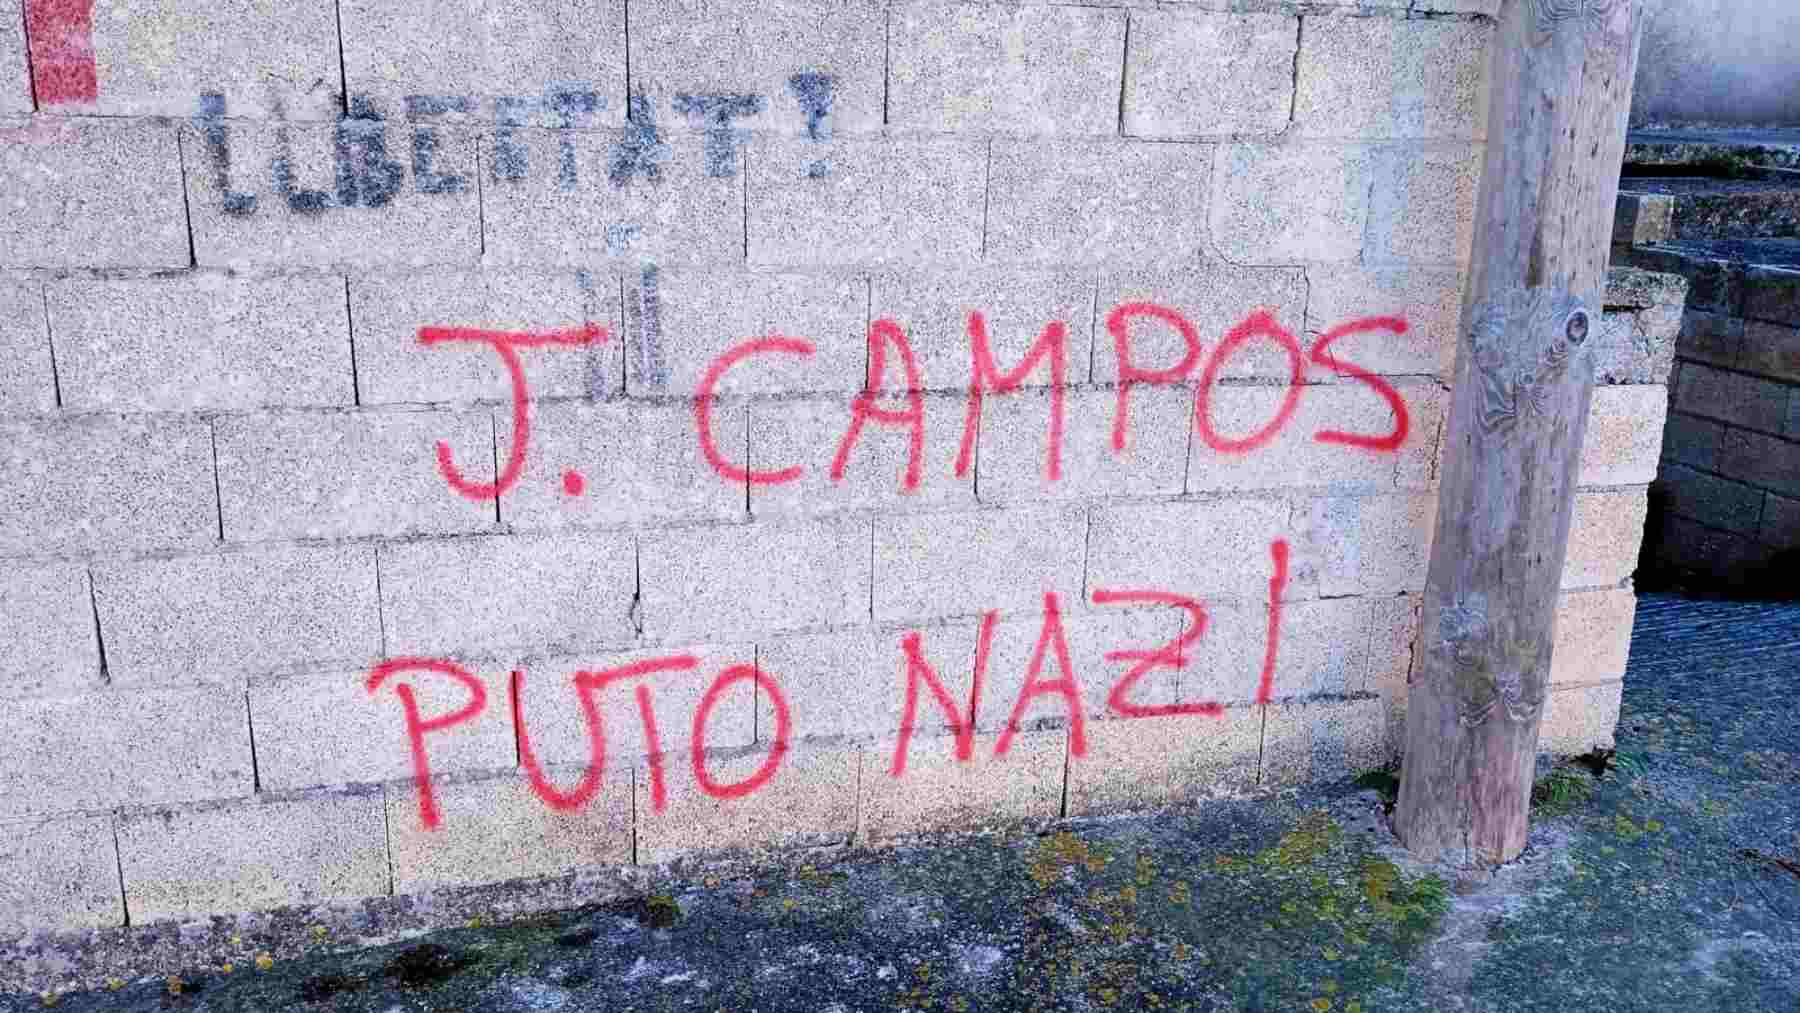 Imagen de la pintada insultante contra el diputado de Vox, Jorge Campos, aparecida en la localidad de Petra (Mallorca).